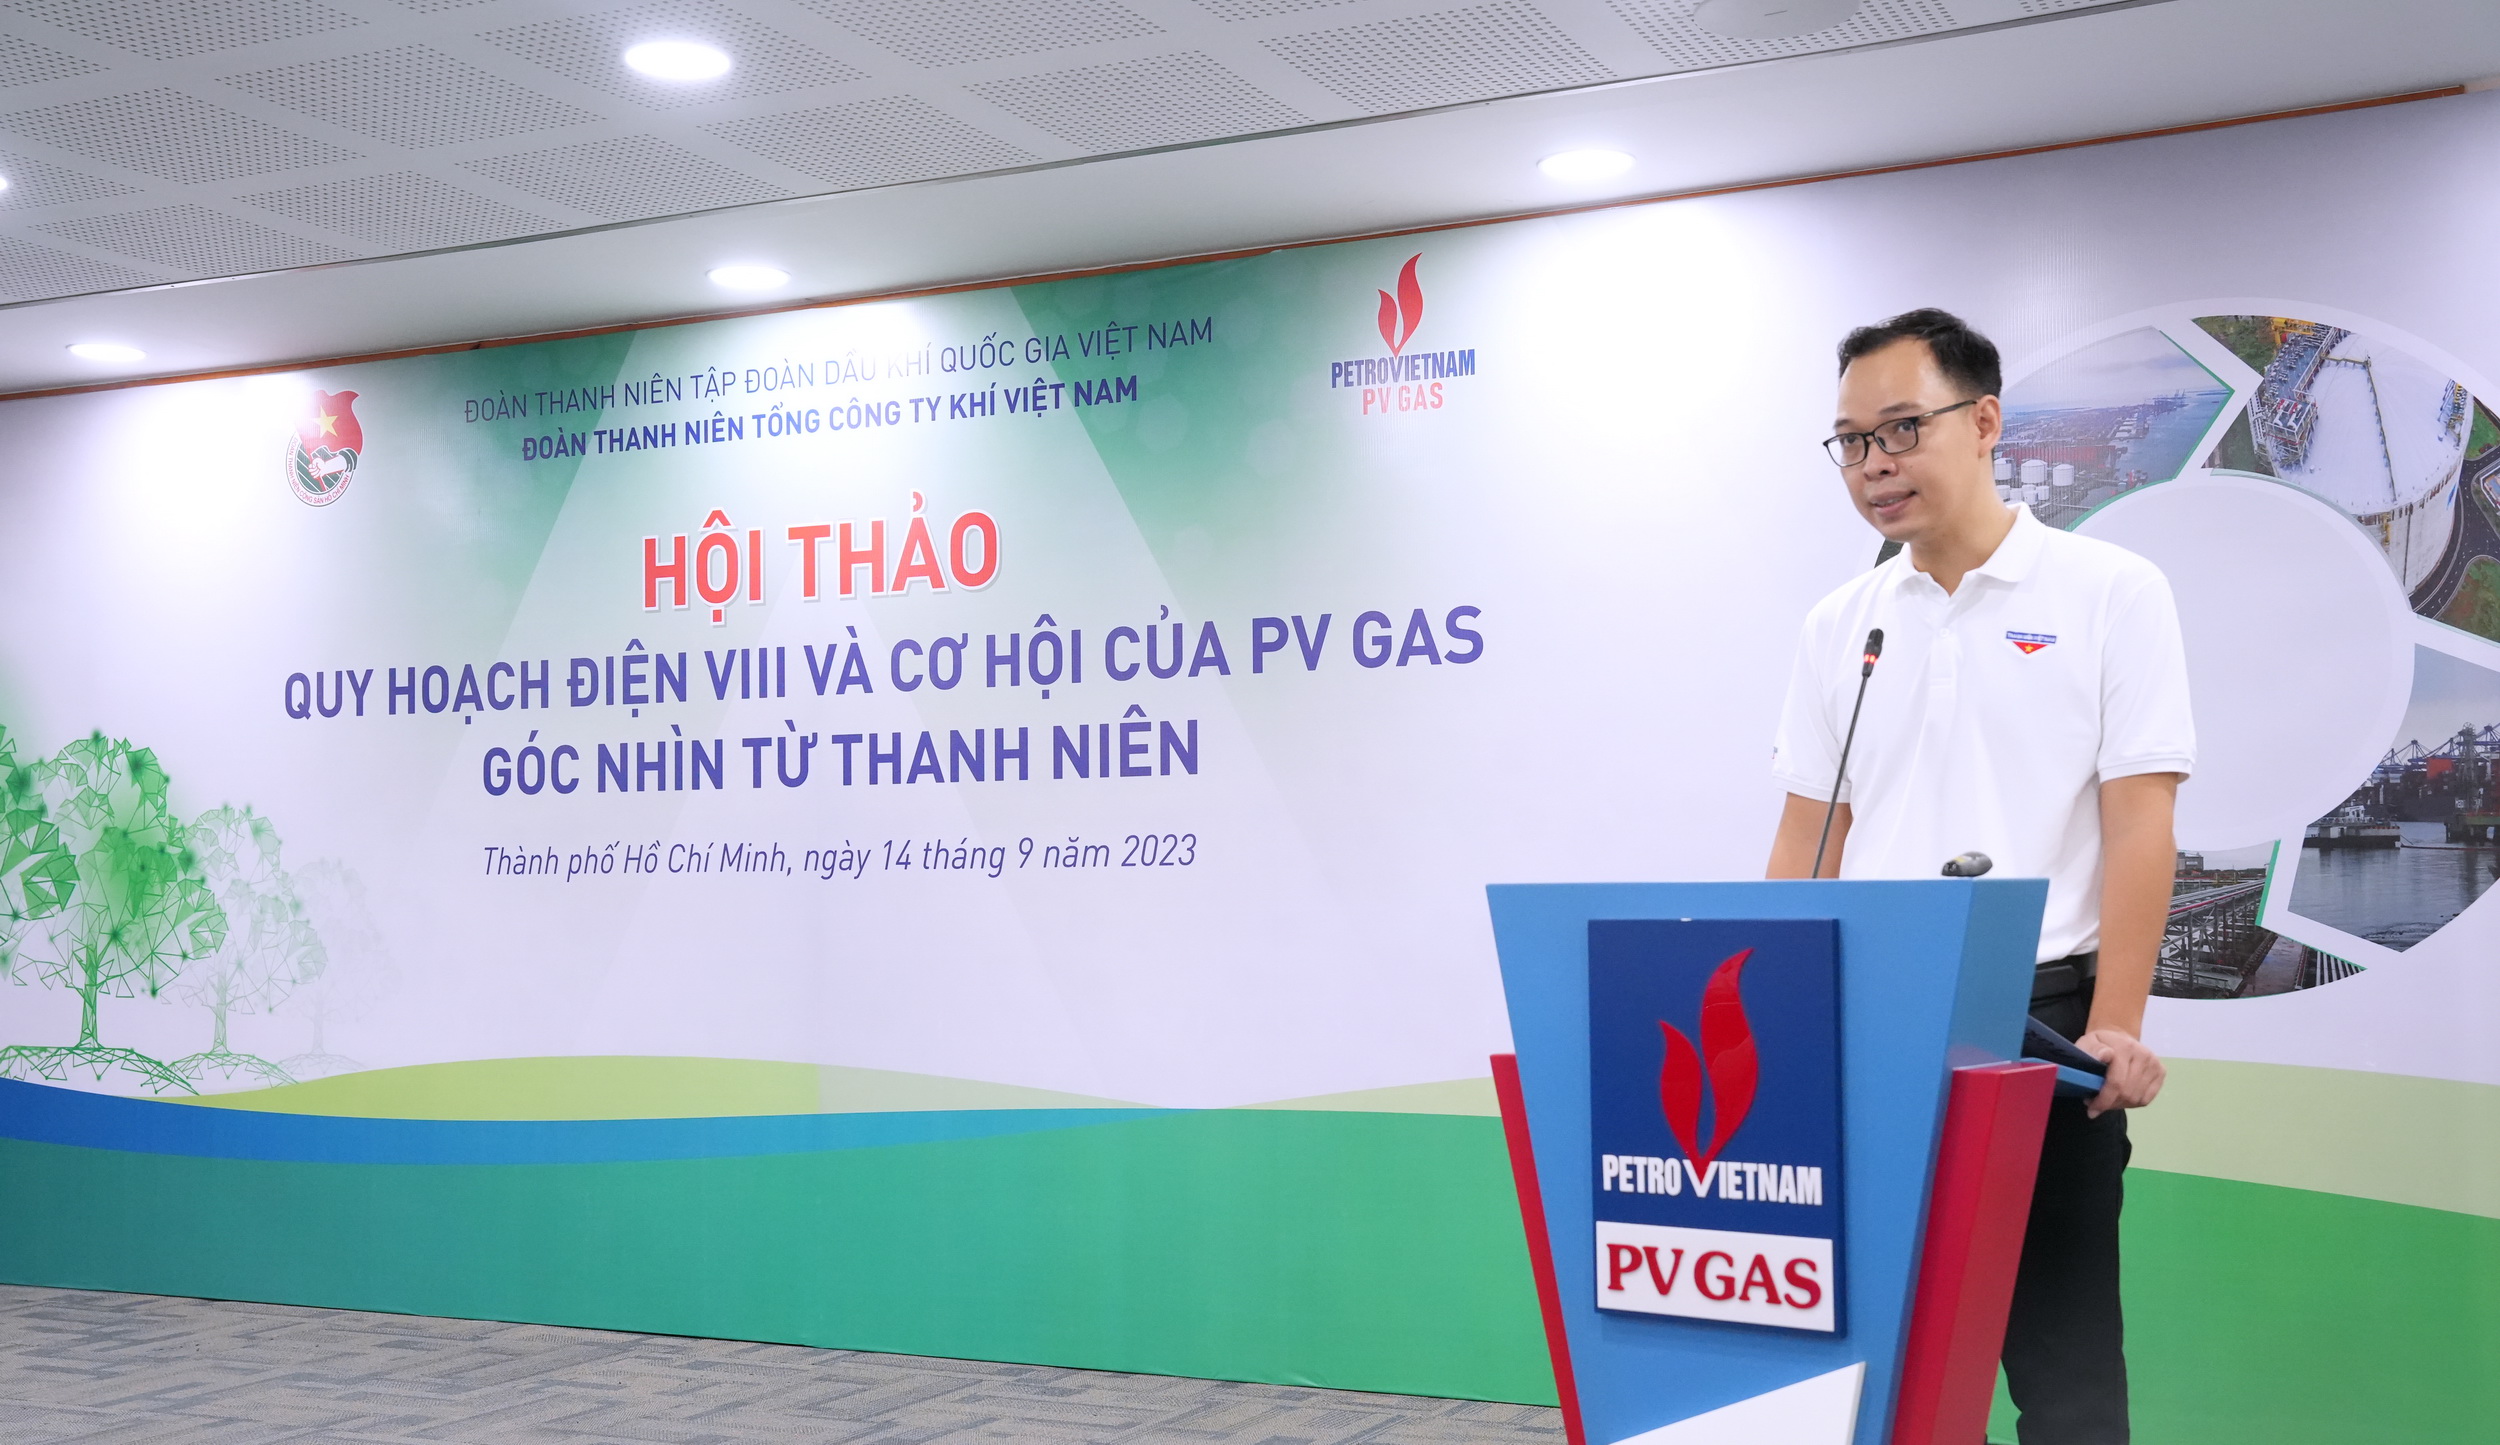 “Quy hoạch điện VIII và cơ hội của PV GAS – Góc nhìn từ thanh niên”